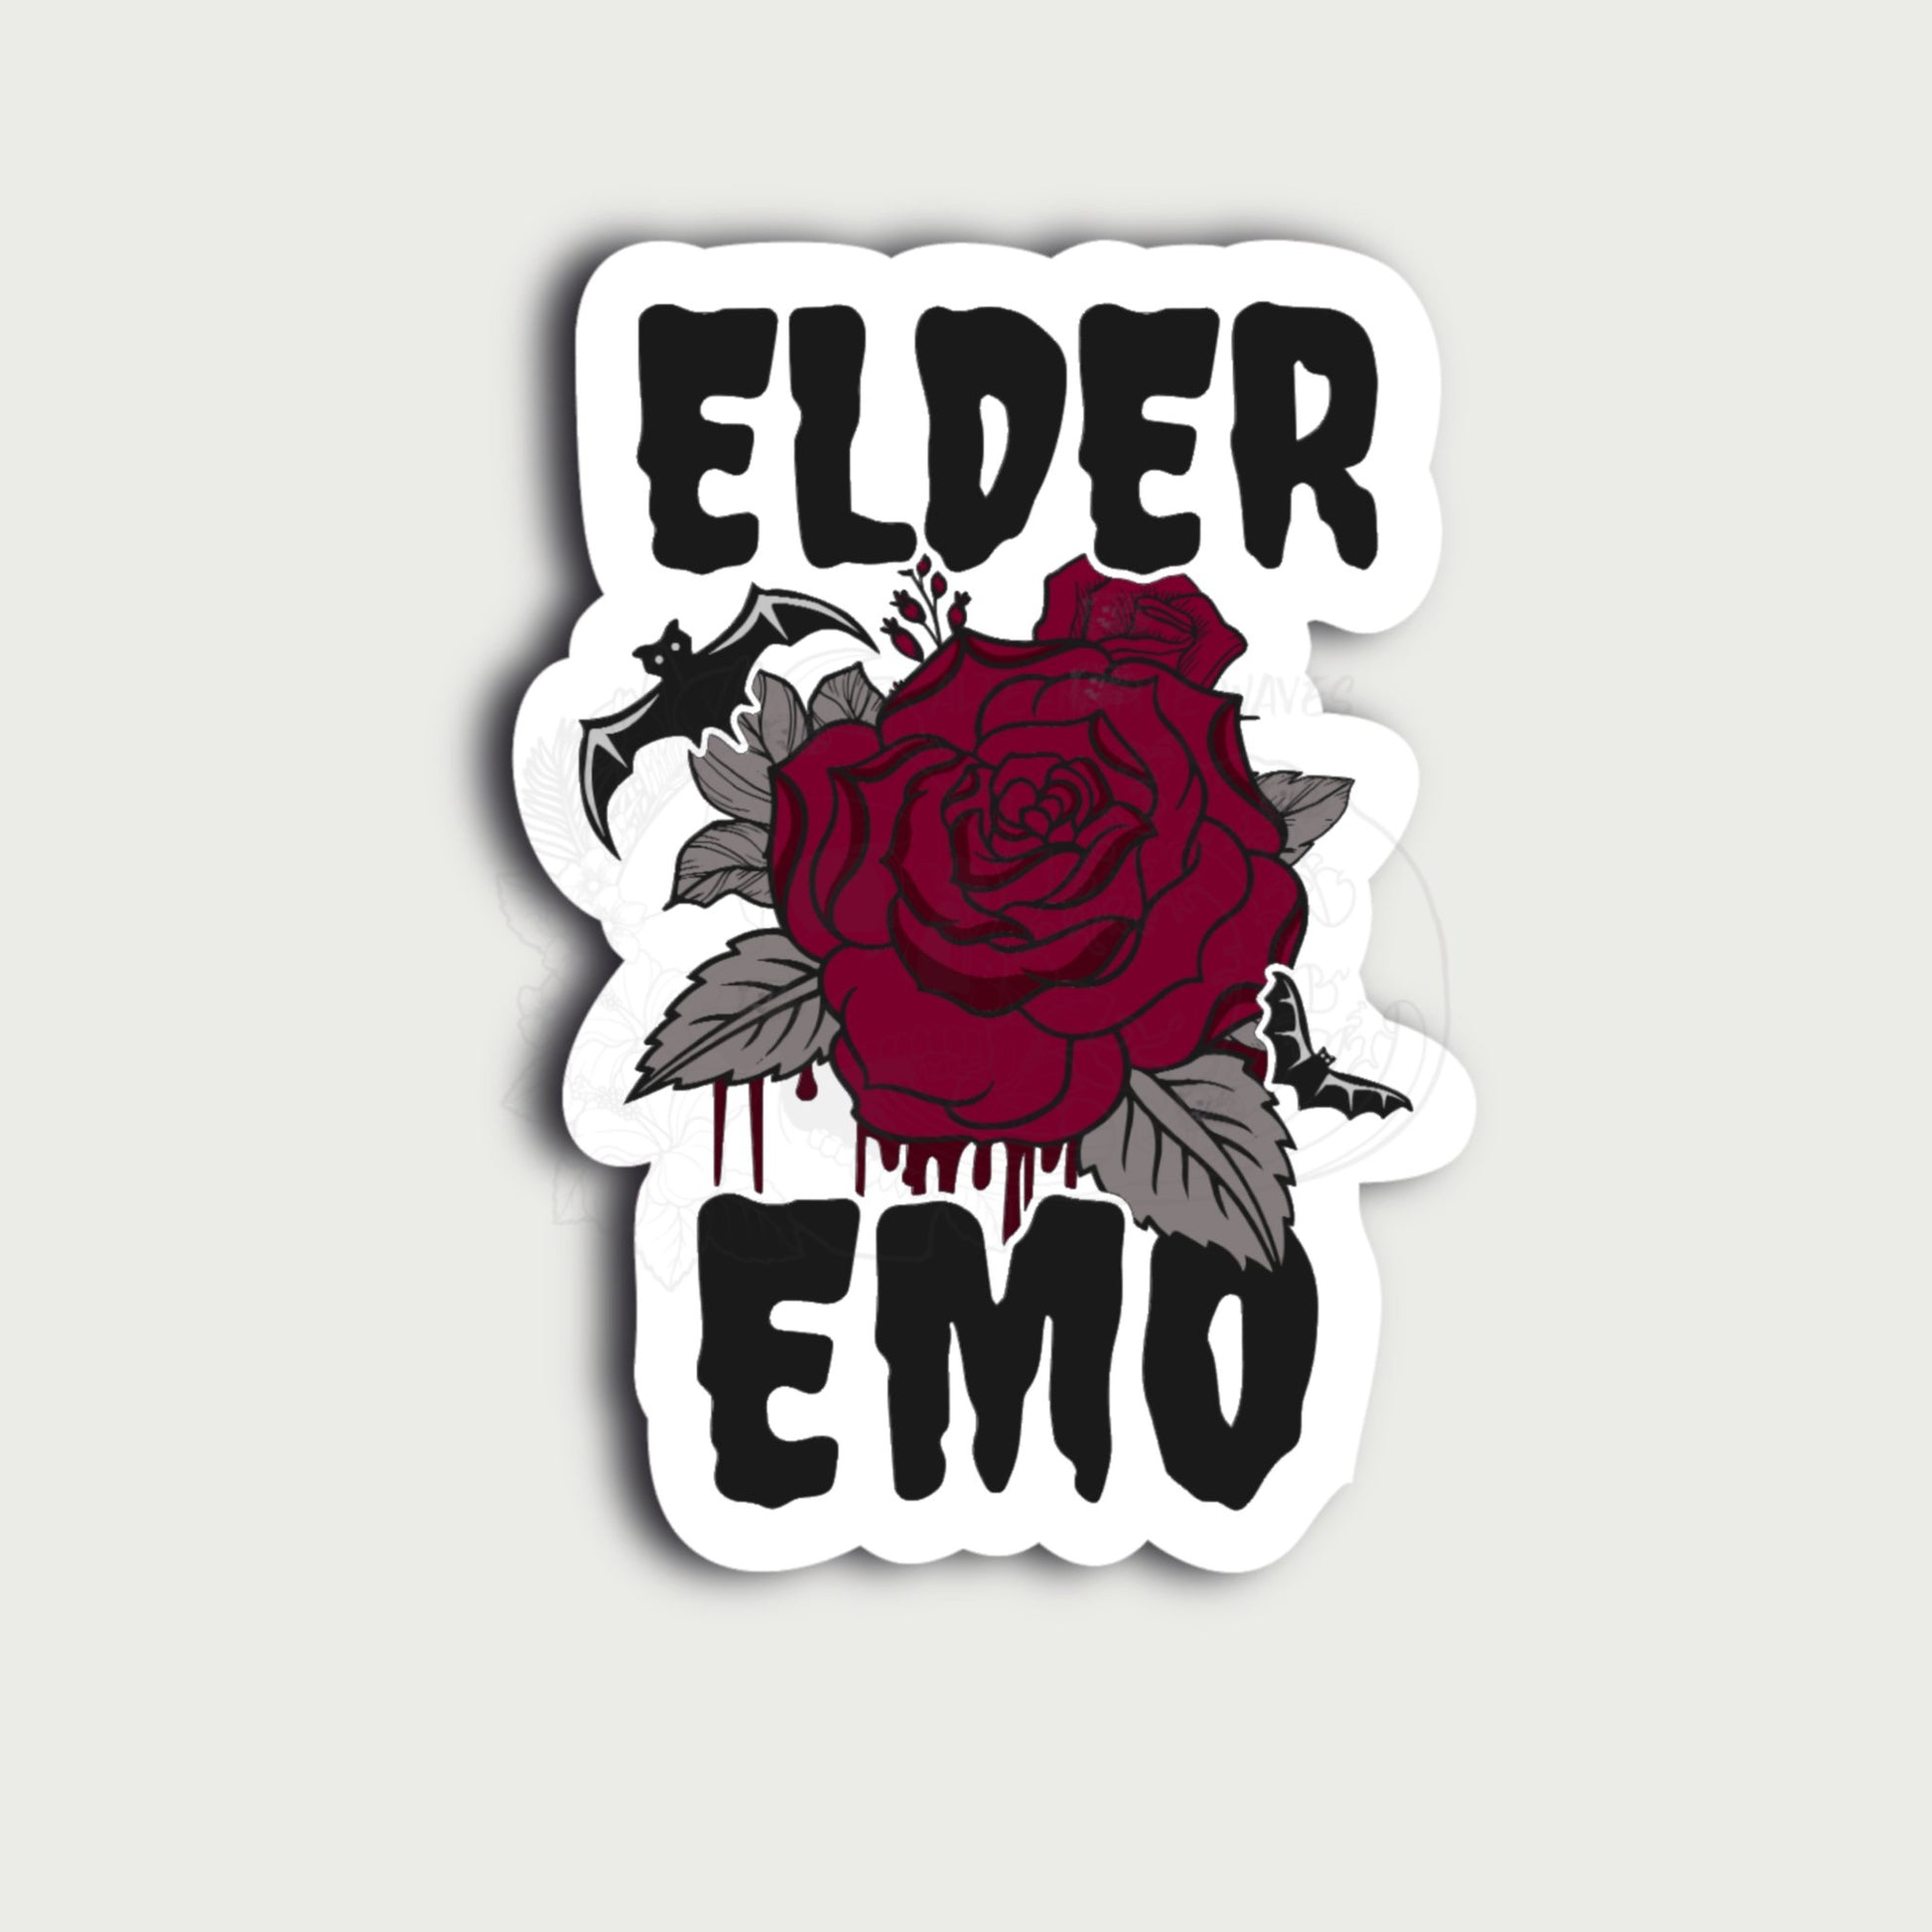 Elder Emo Sticker - Alternative Waves